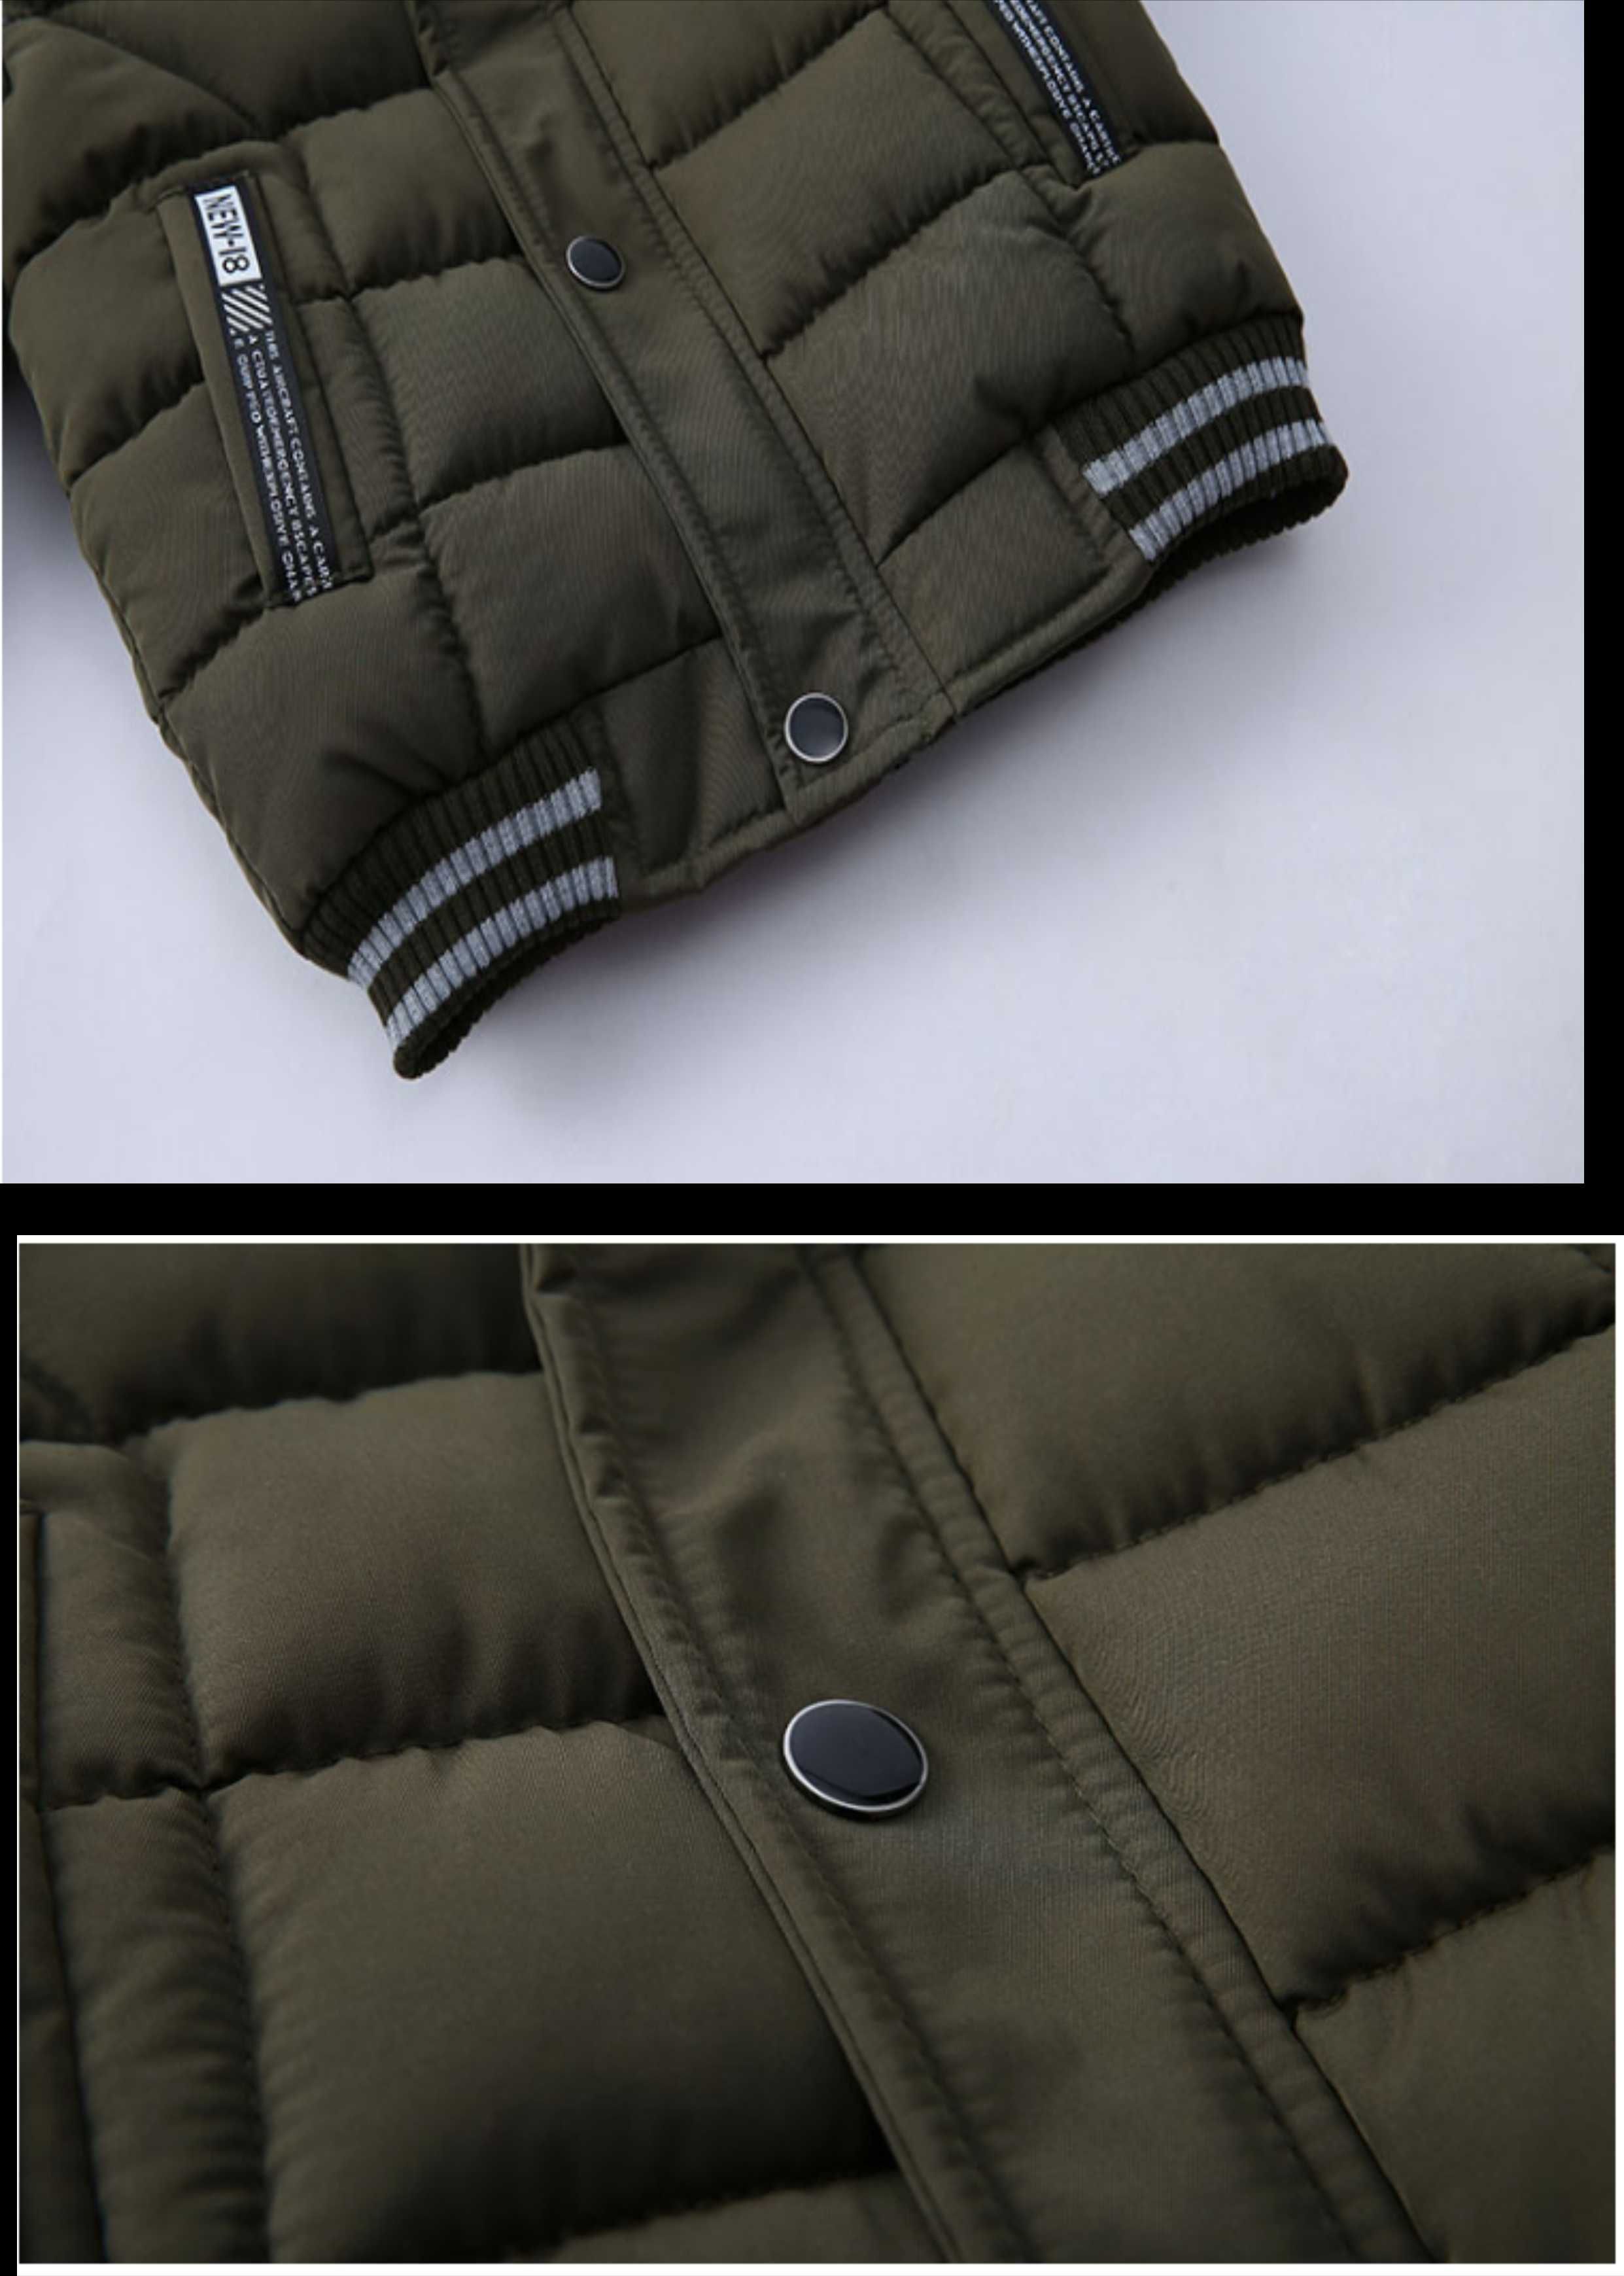 Продам новые в упаковке теплые зимние куртки для мальчиков 4-6 лет